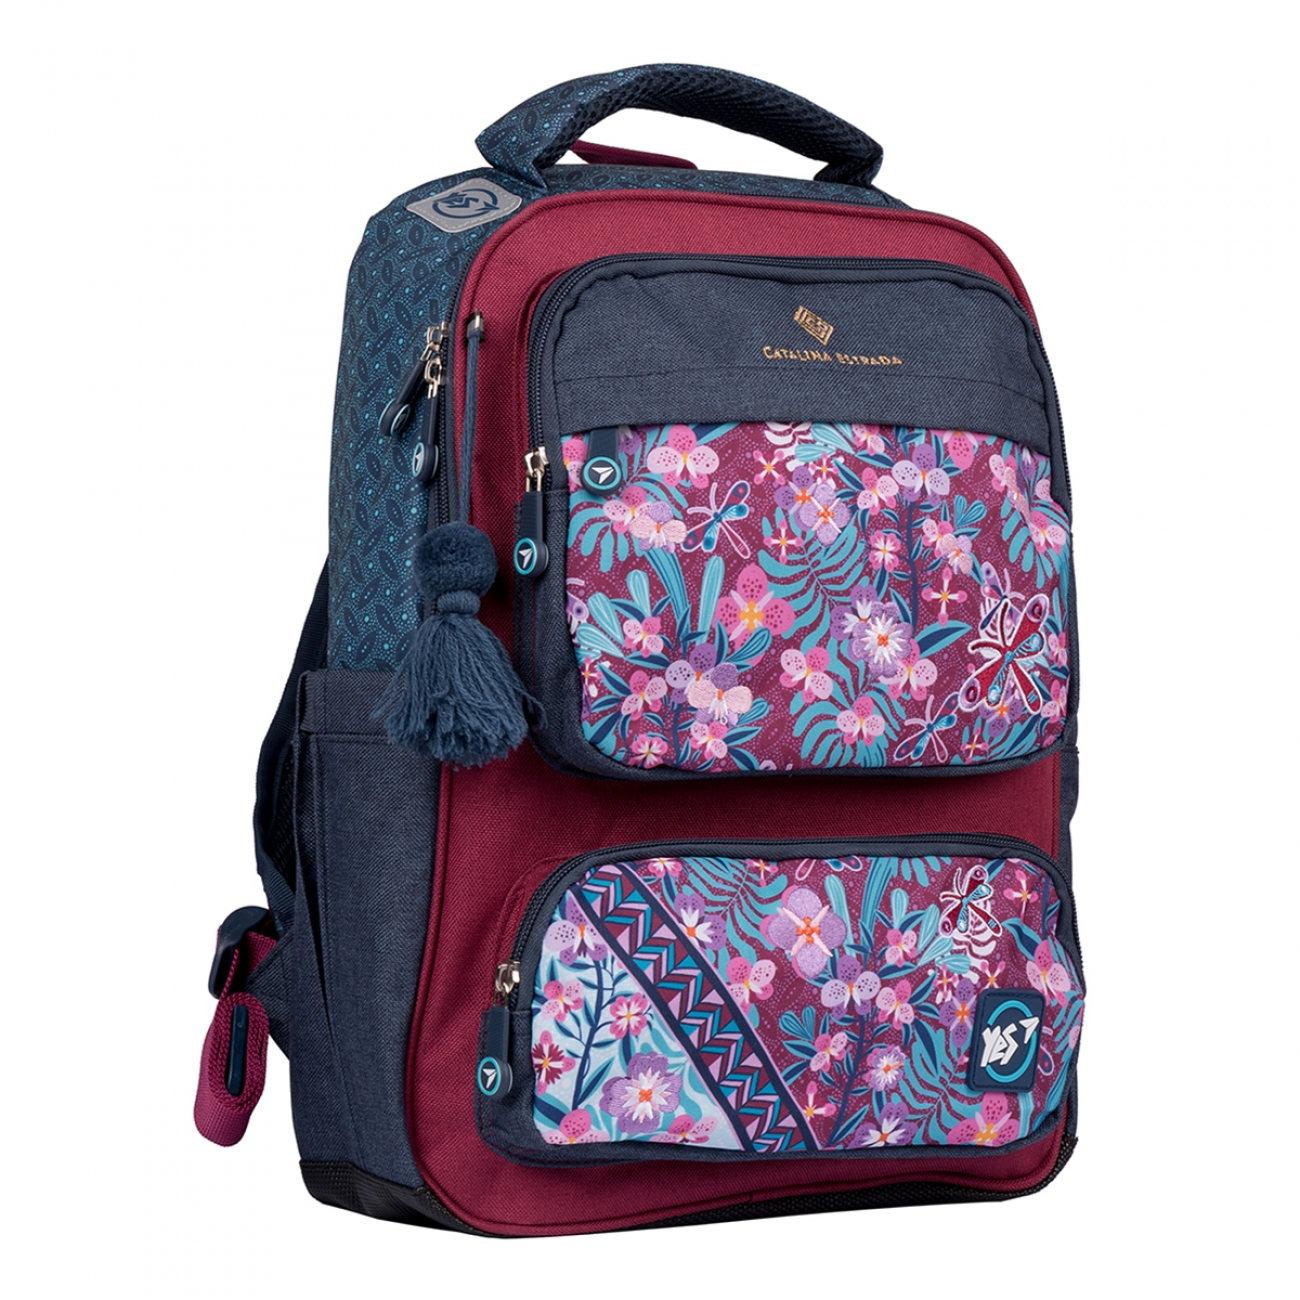 Шкільний рюкзак YES TS-62 Catalina Estrada.Pattern 556251 M Синій